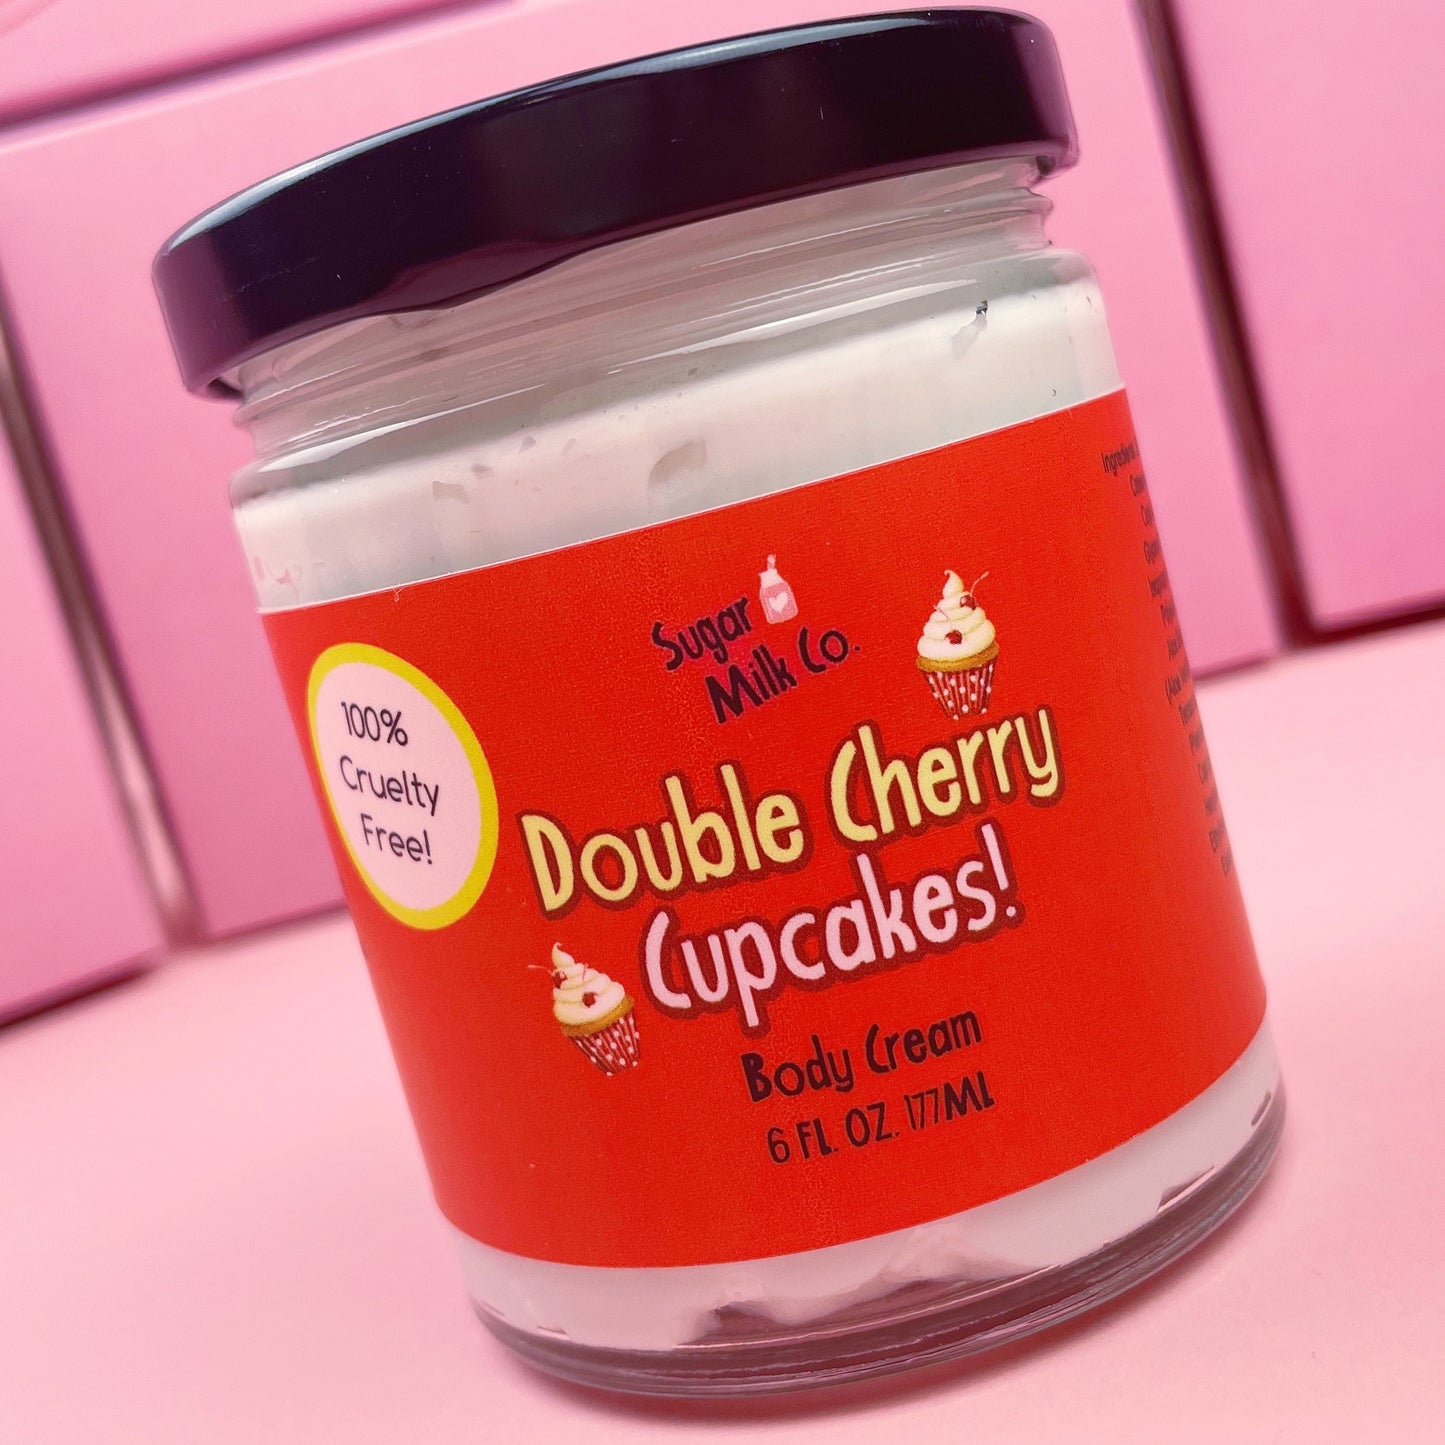 Double Cherry Cupcakes Body Cream